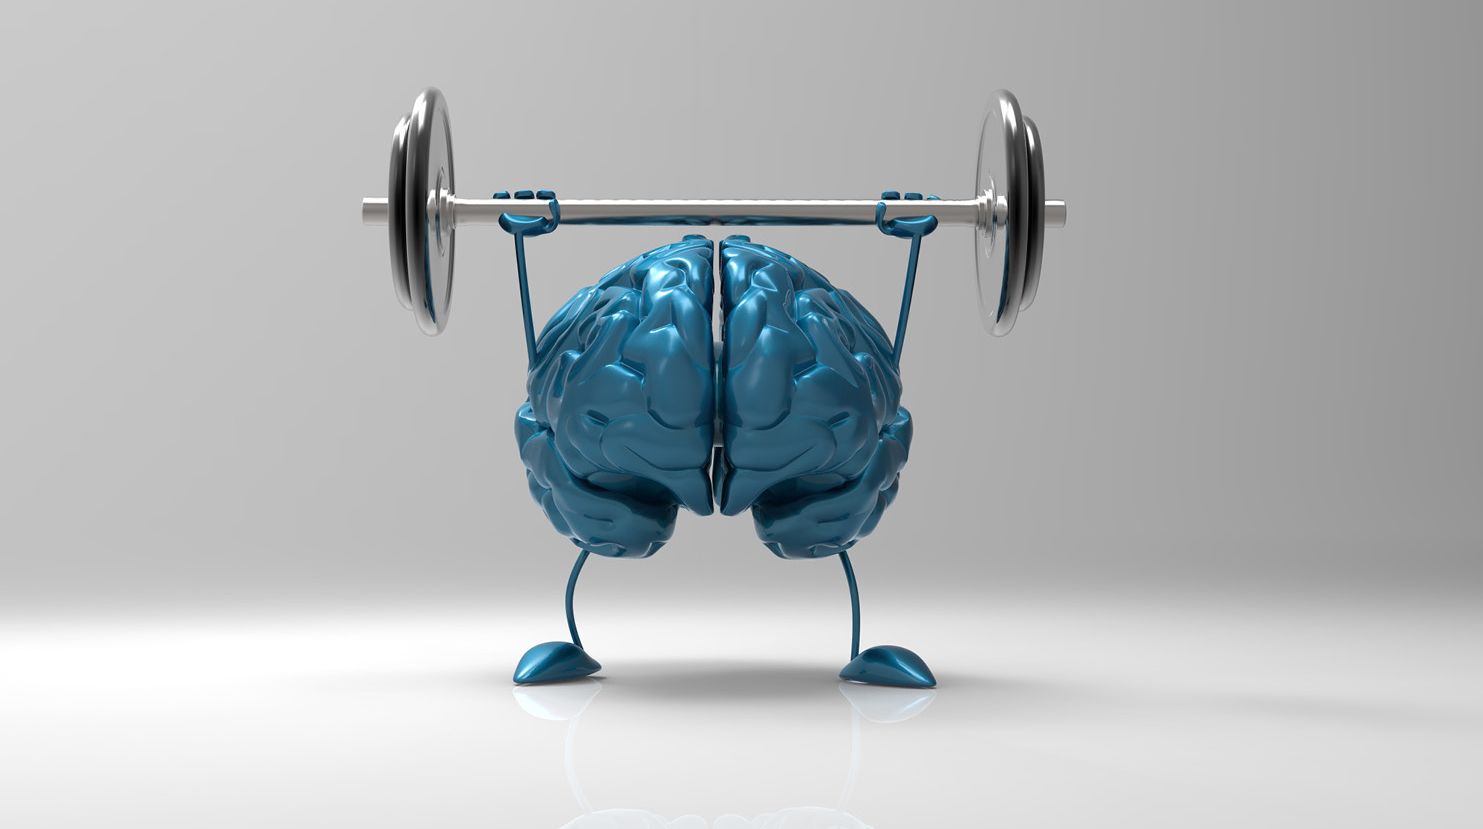 והמוח רץ: כיצד מושפע המוח שלנו מפעילות גופנית